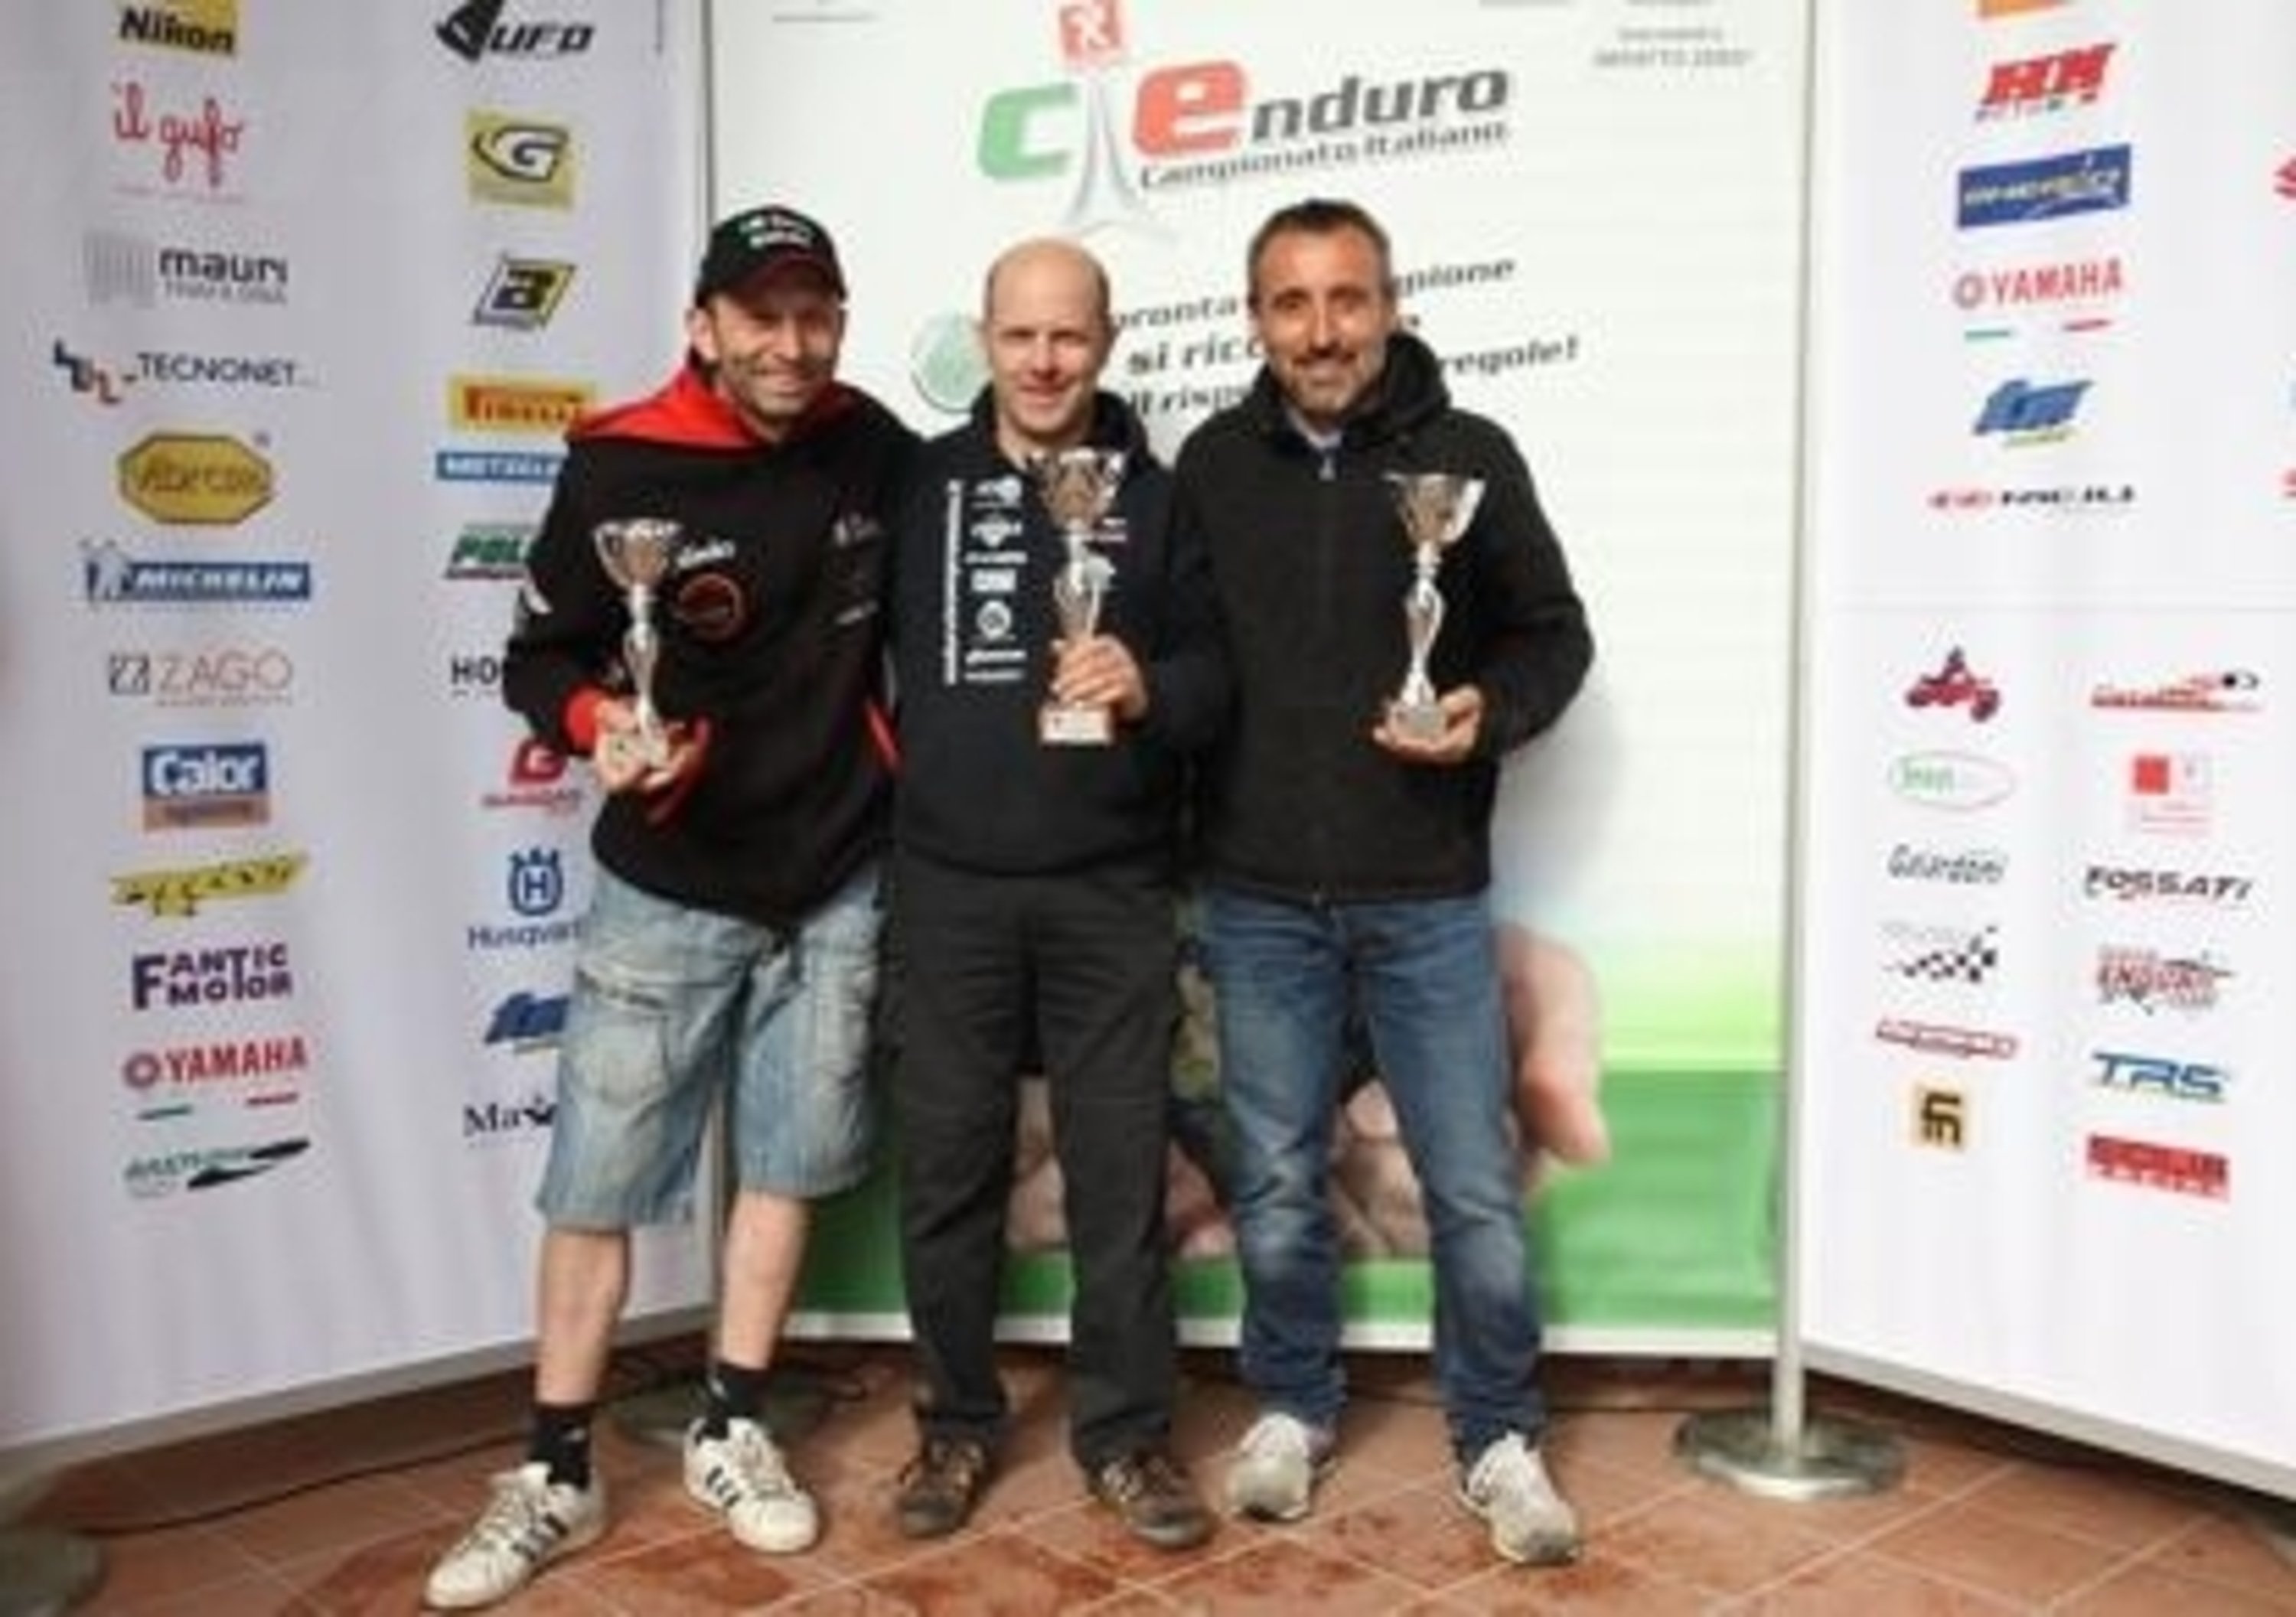 Campionato Italiano Major. Seconda prova a Fiorenzuola